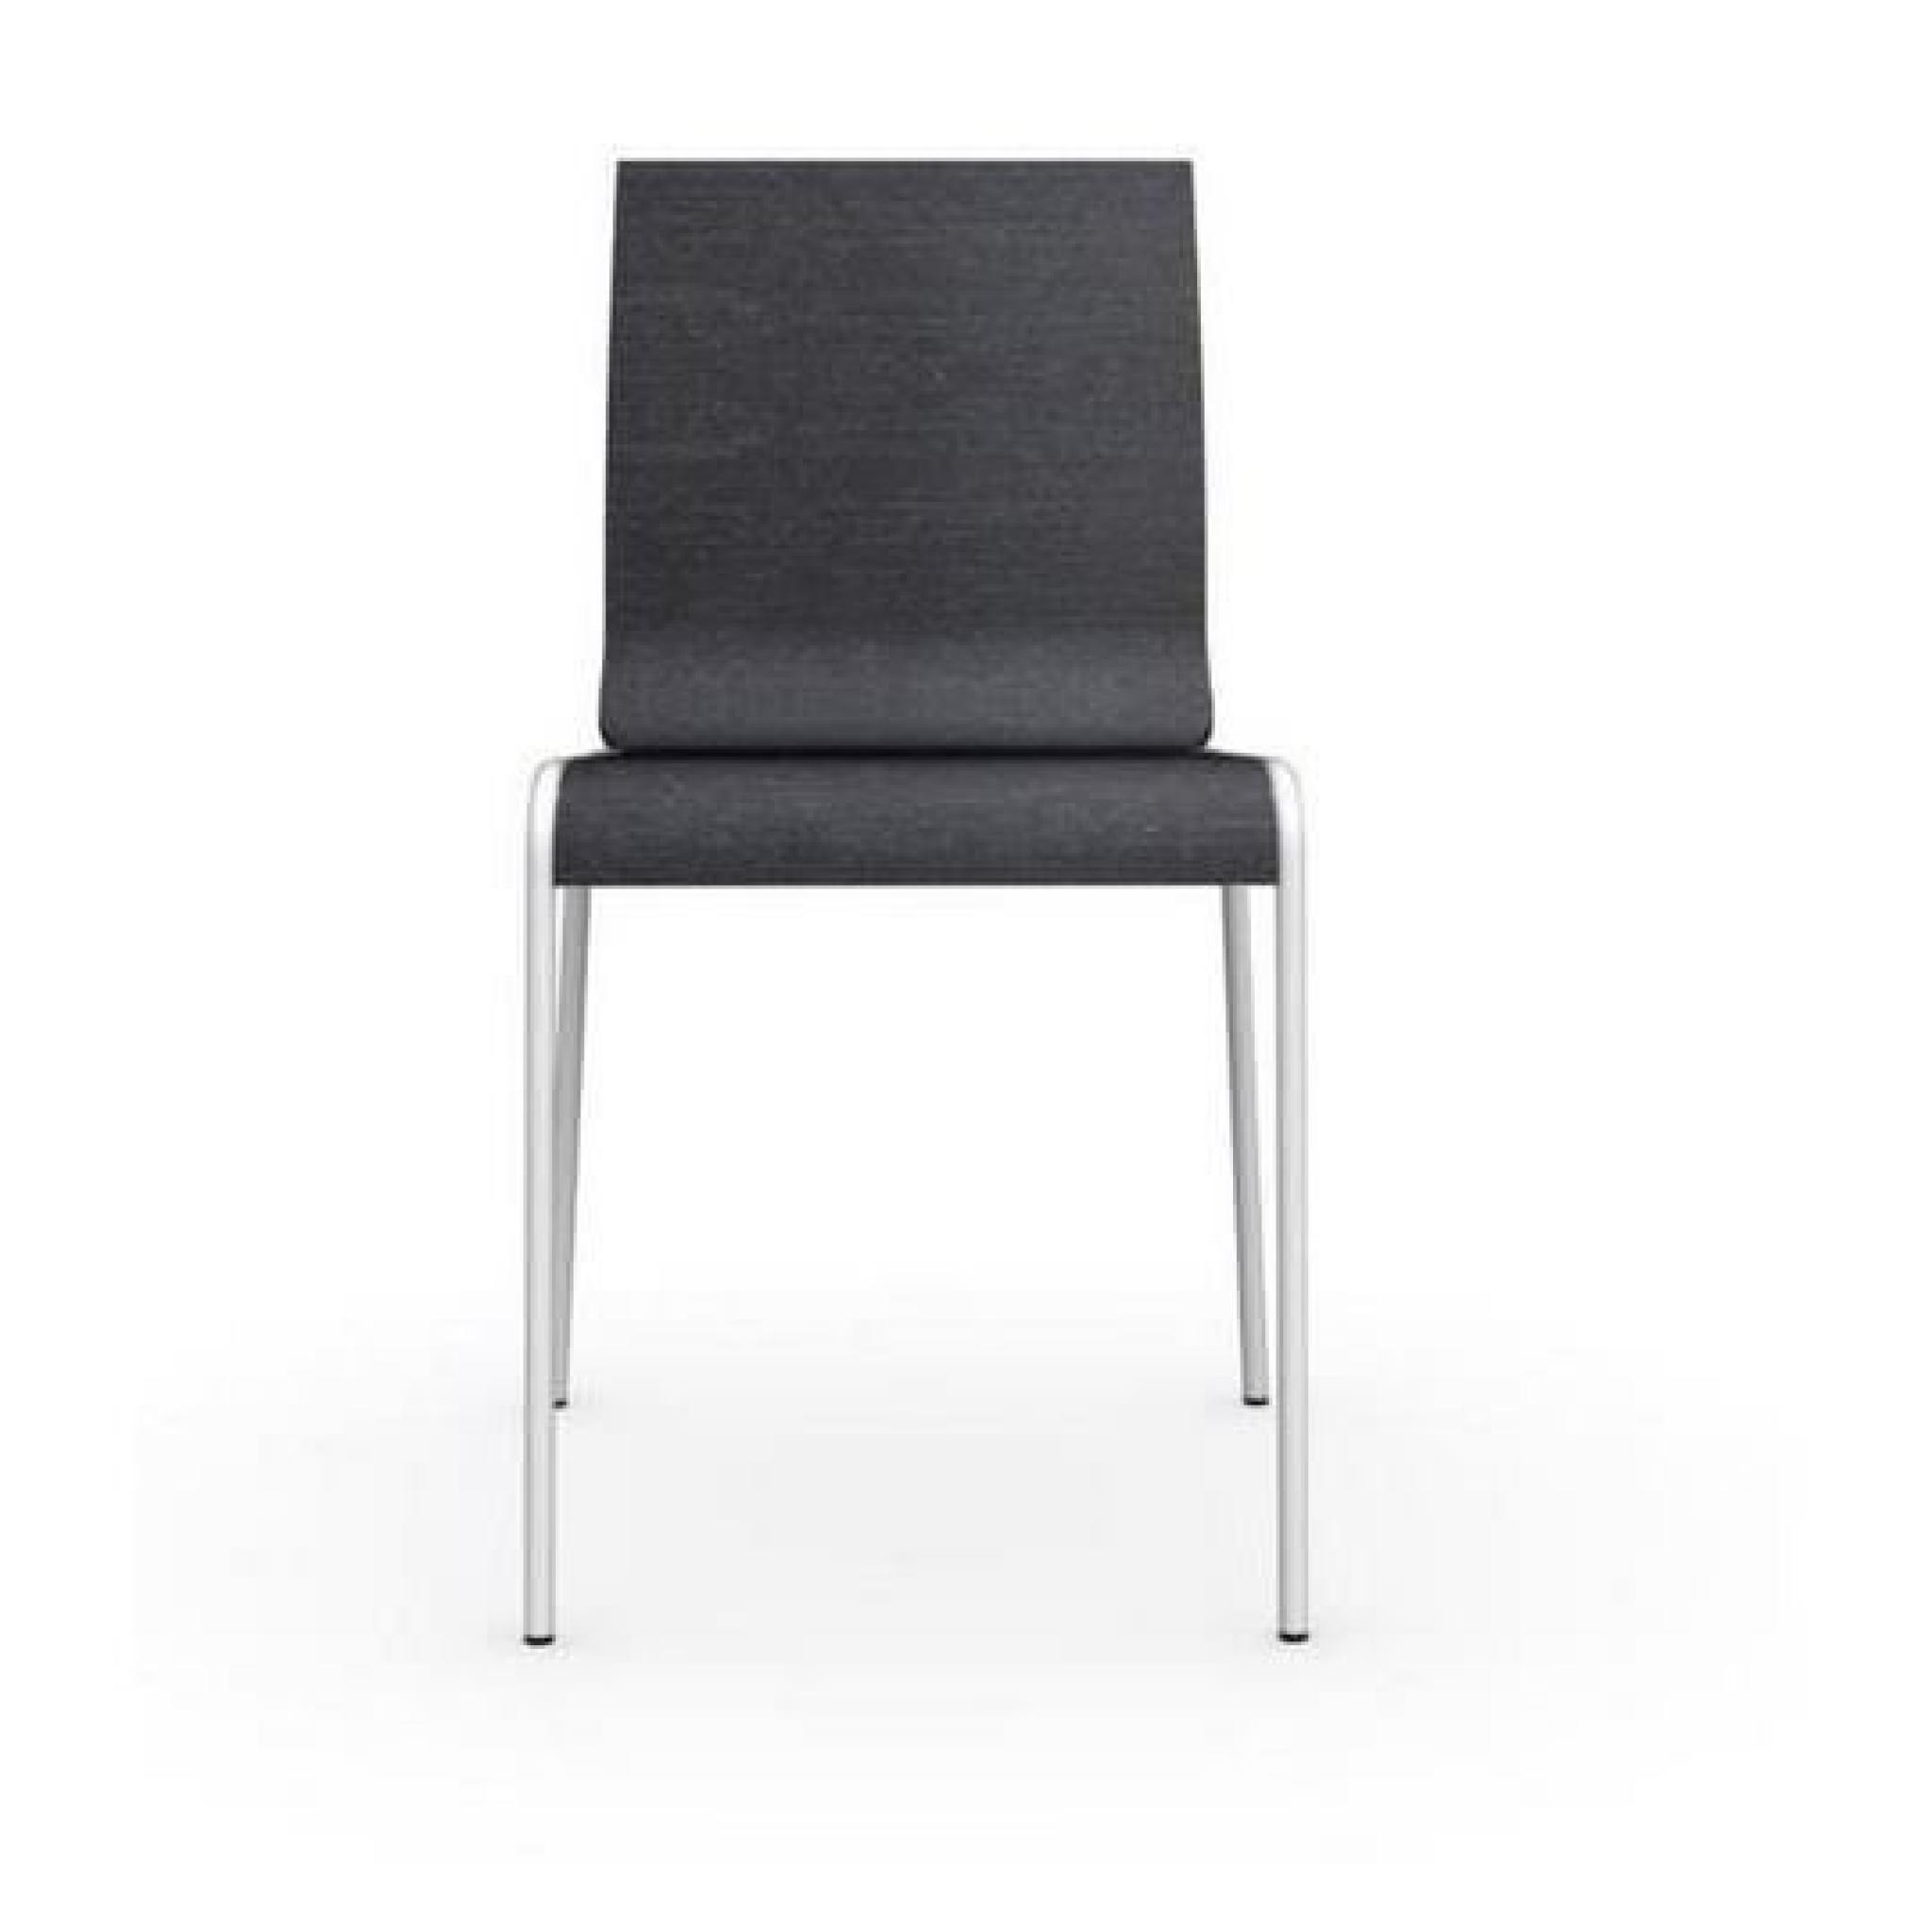 Chaise ONLINE gris graphite et acier laqué blanc de calligaris pas cher